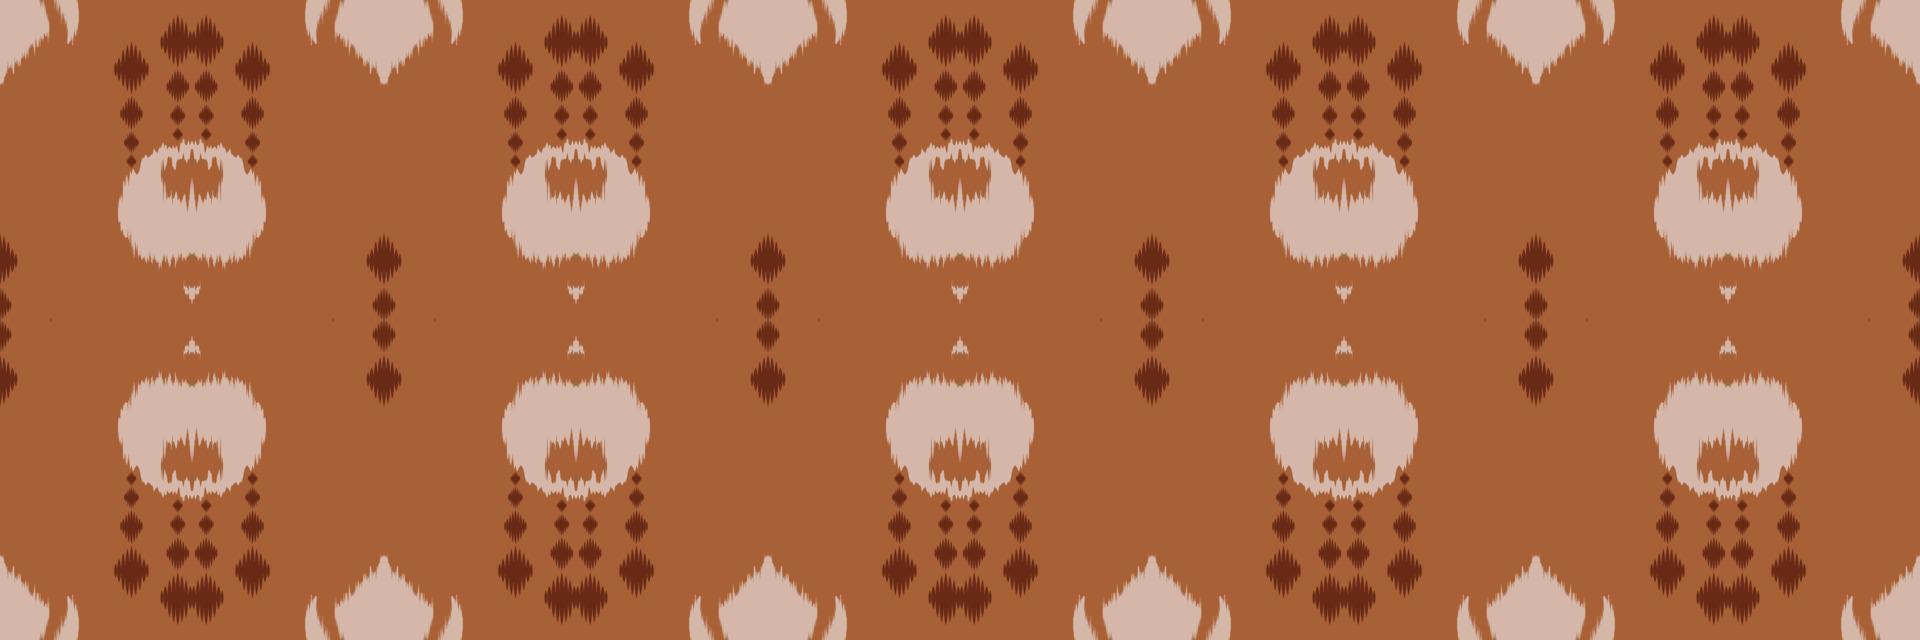 motivo ikat triângulo batik têxtil sem costura padrão design de vetor digital para impressão saree kurti borneo tecido borda escova símbolos amostras algodão